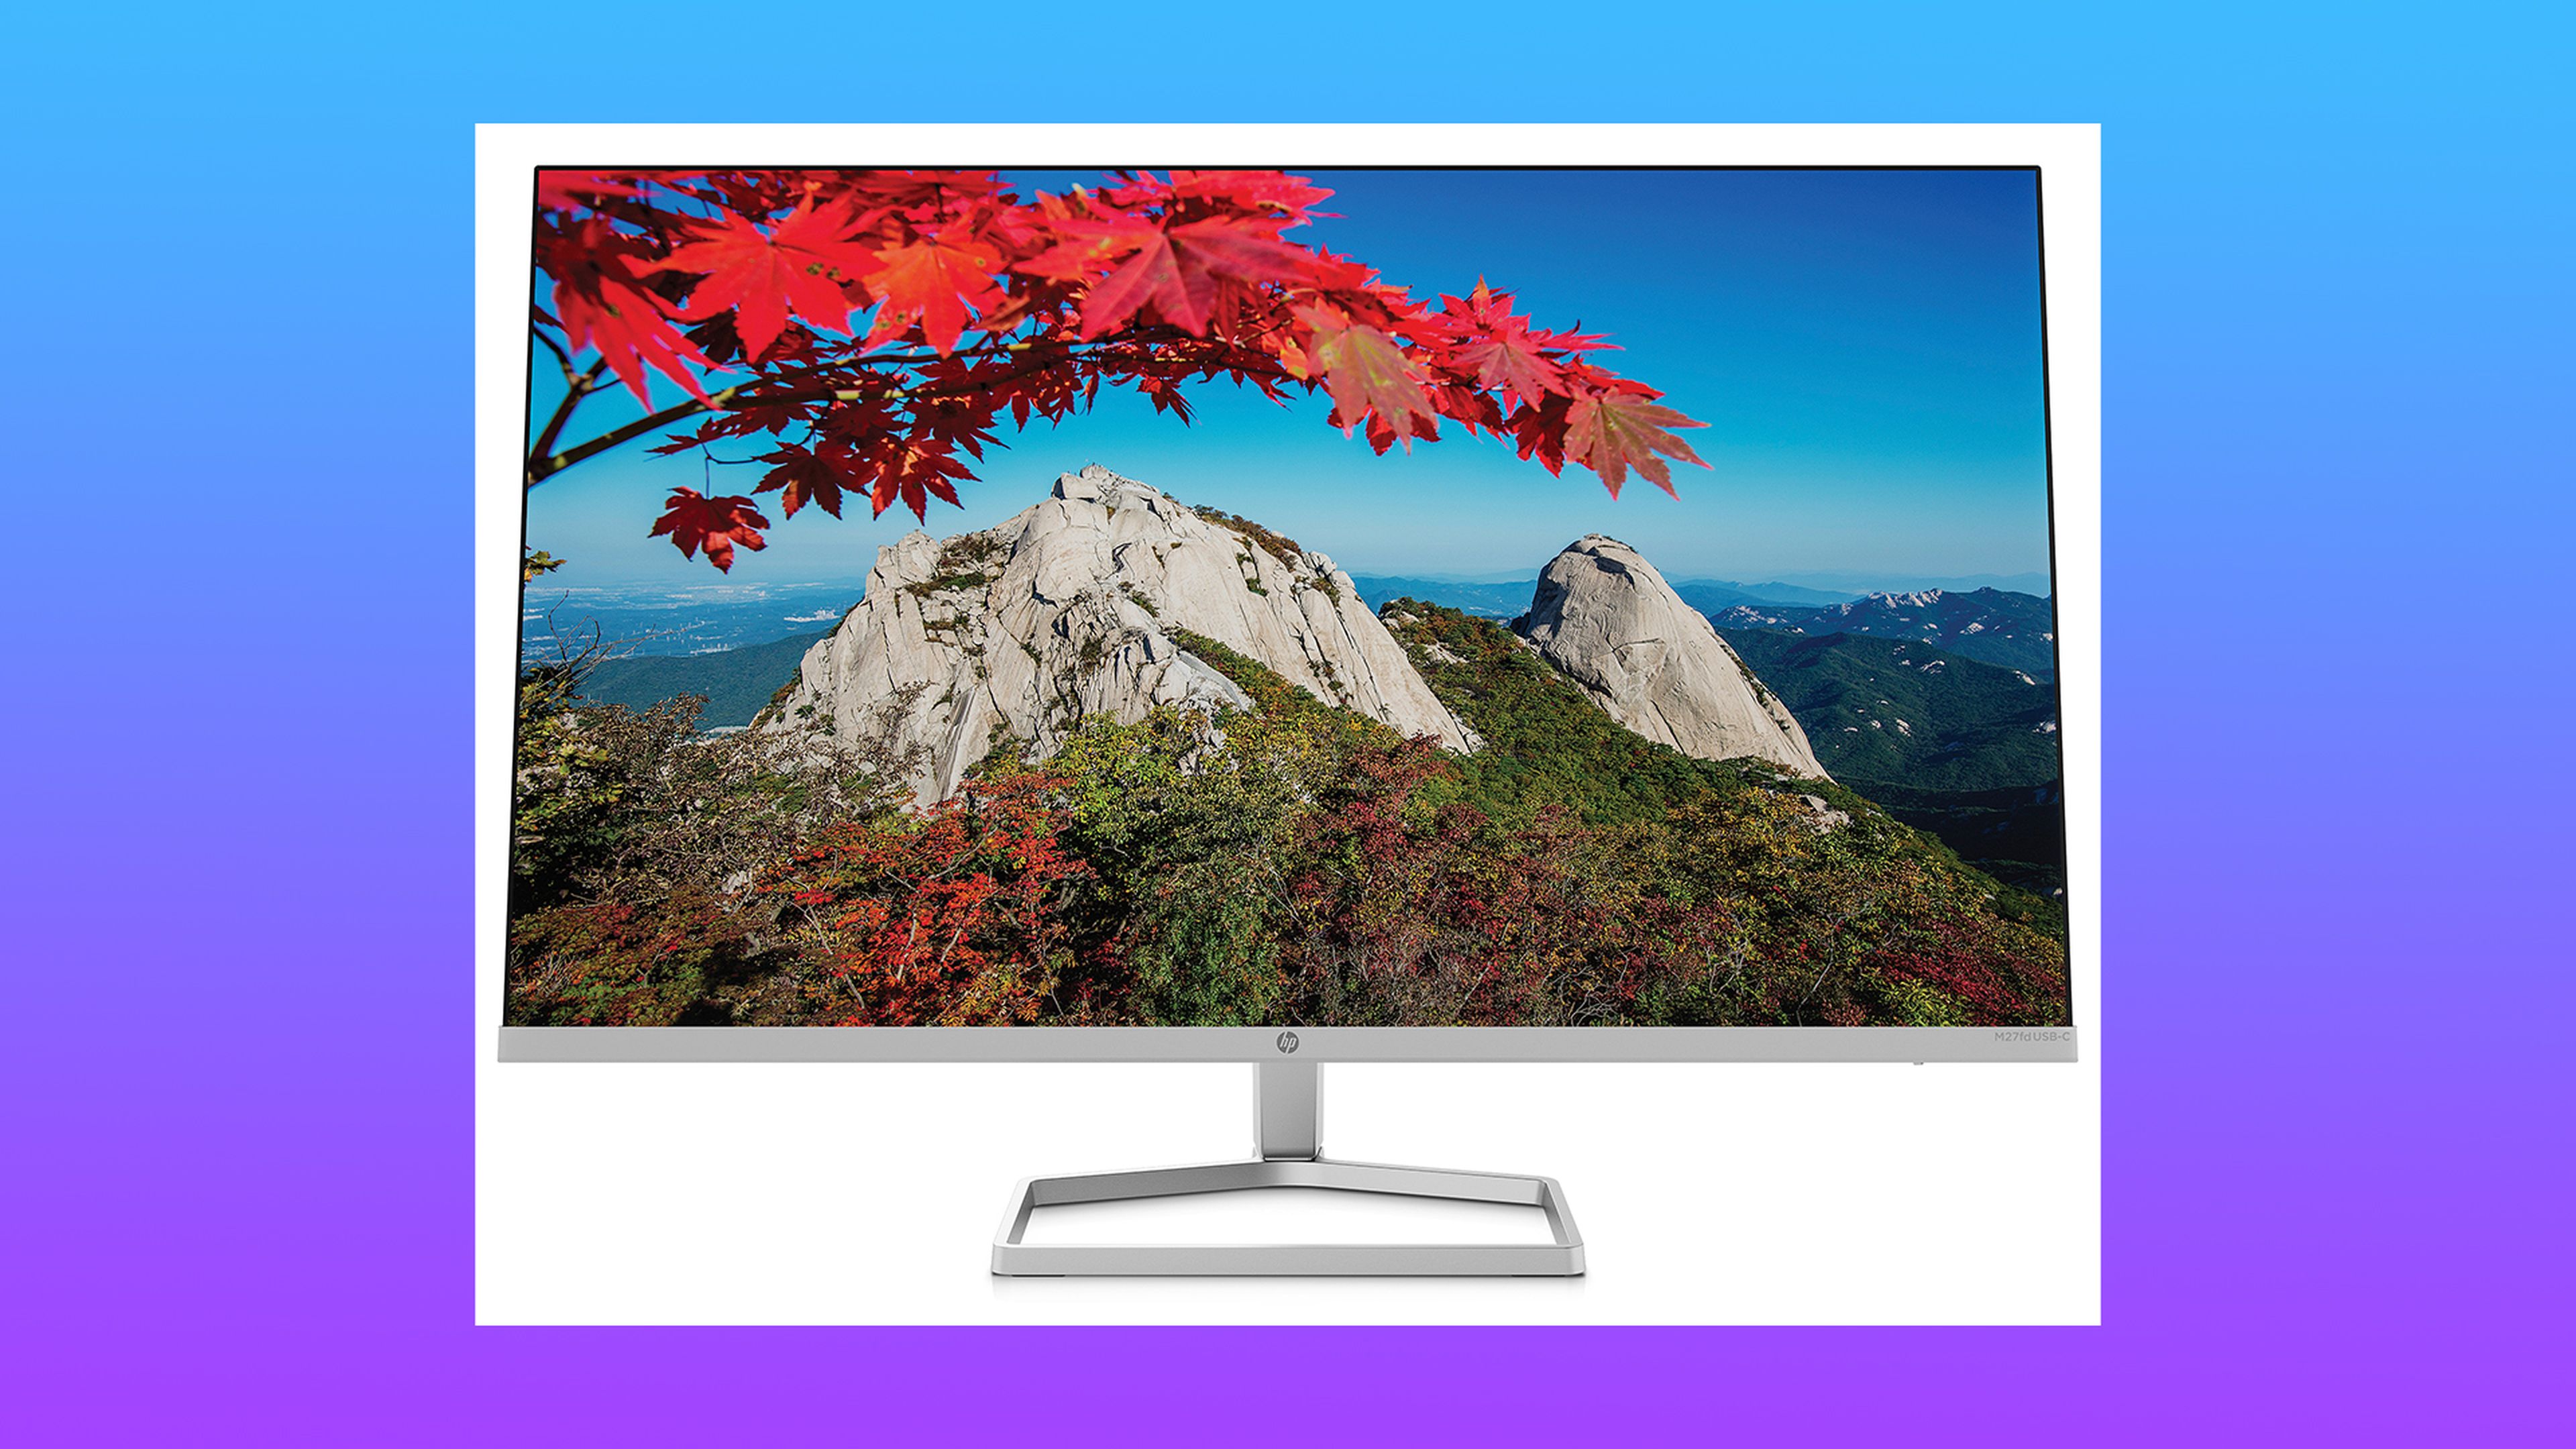 El nuevo monitor de HP cuenta con una webcam integrada para facilitar las videollamadas